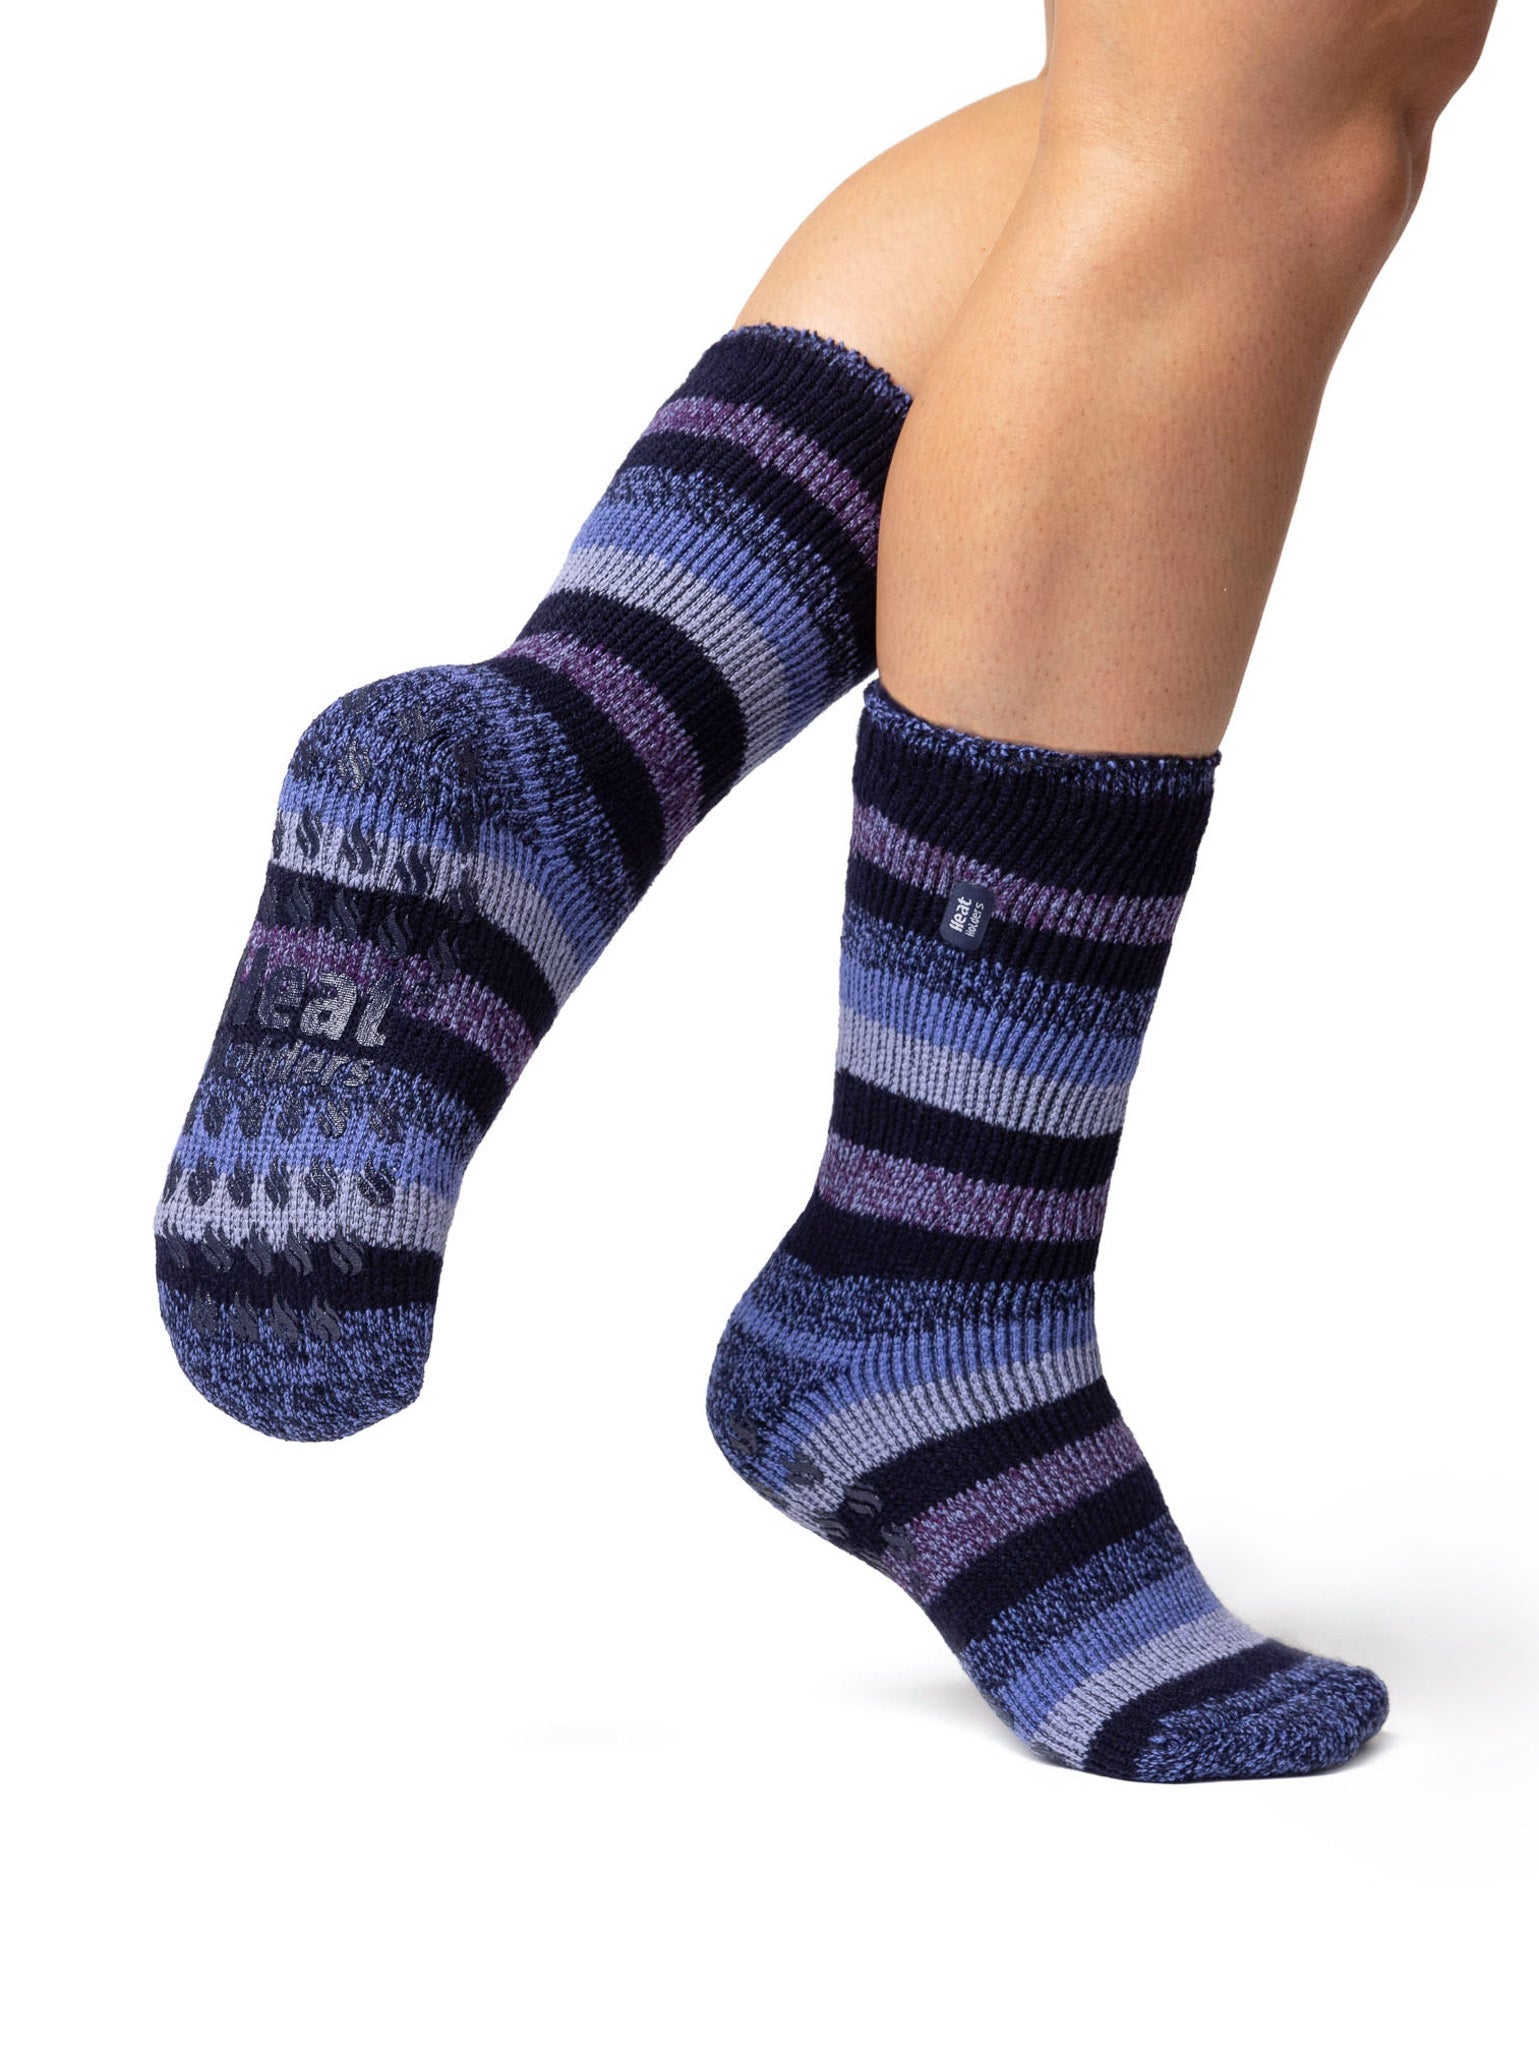 HEAT HOLDERS Original Ultimate Thermal Slipper Sock - Women's Bigfoot